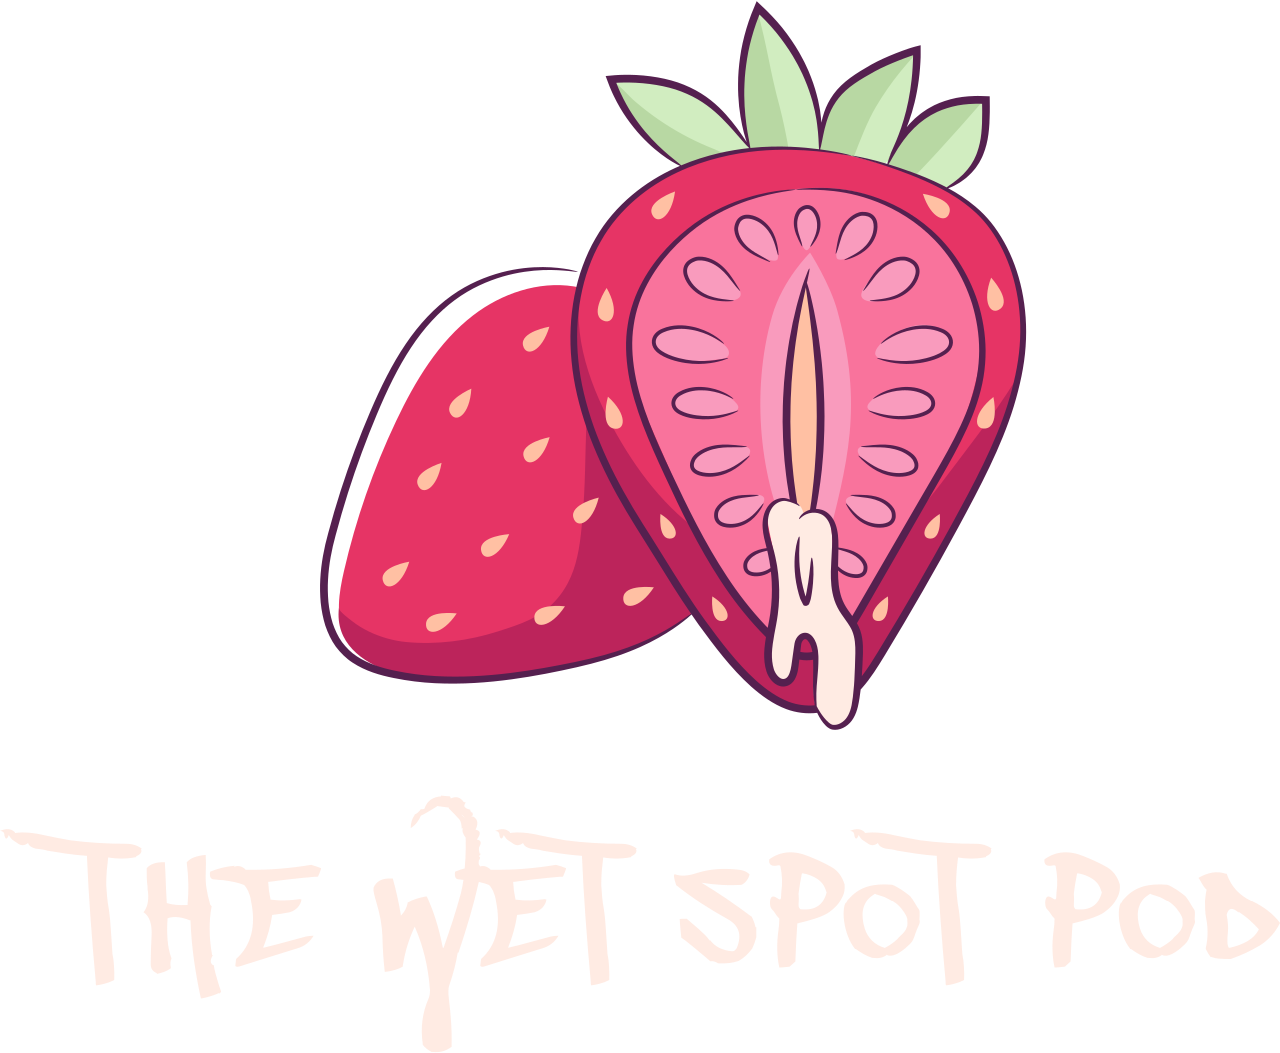 The Wet Spot Pod's logo